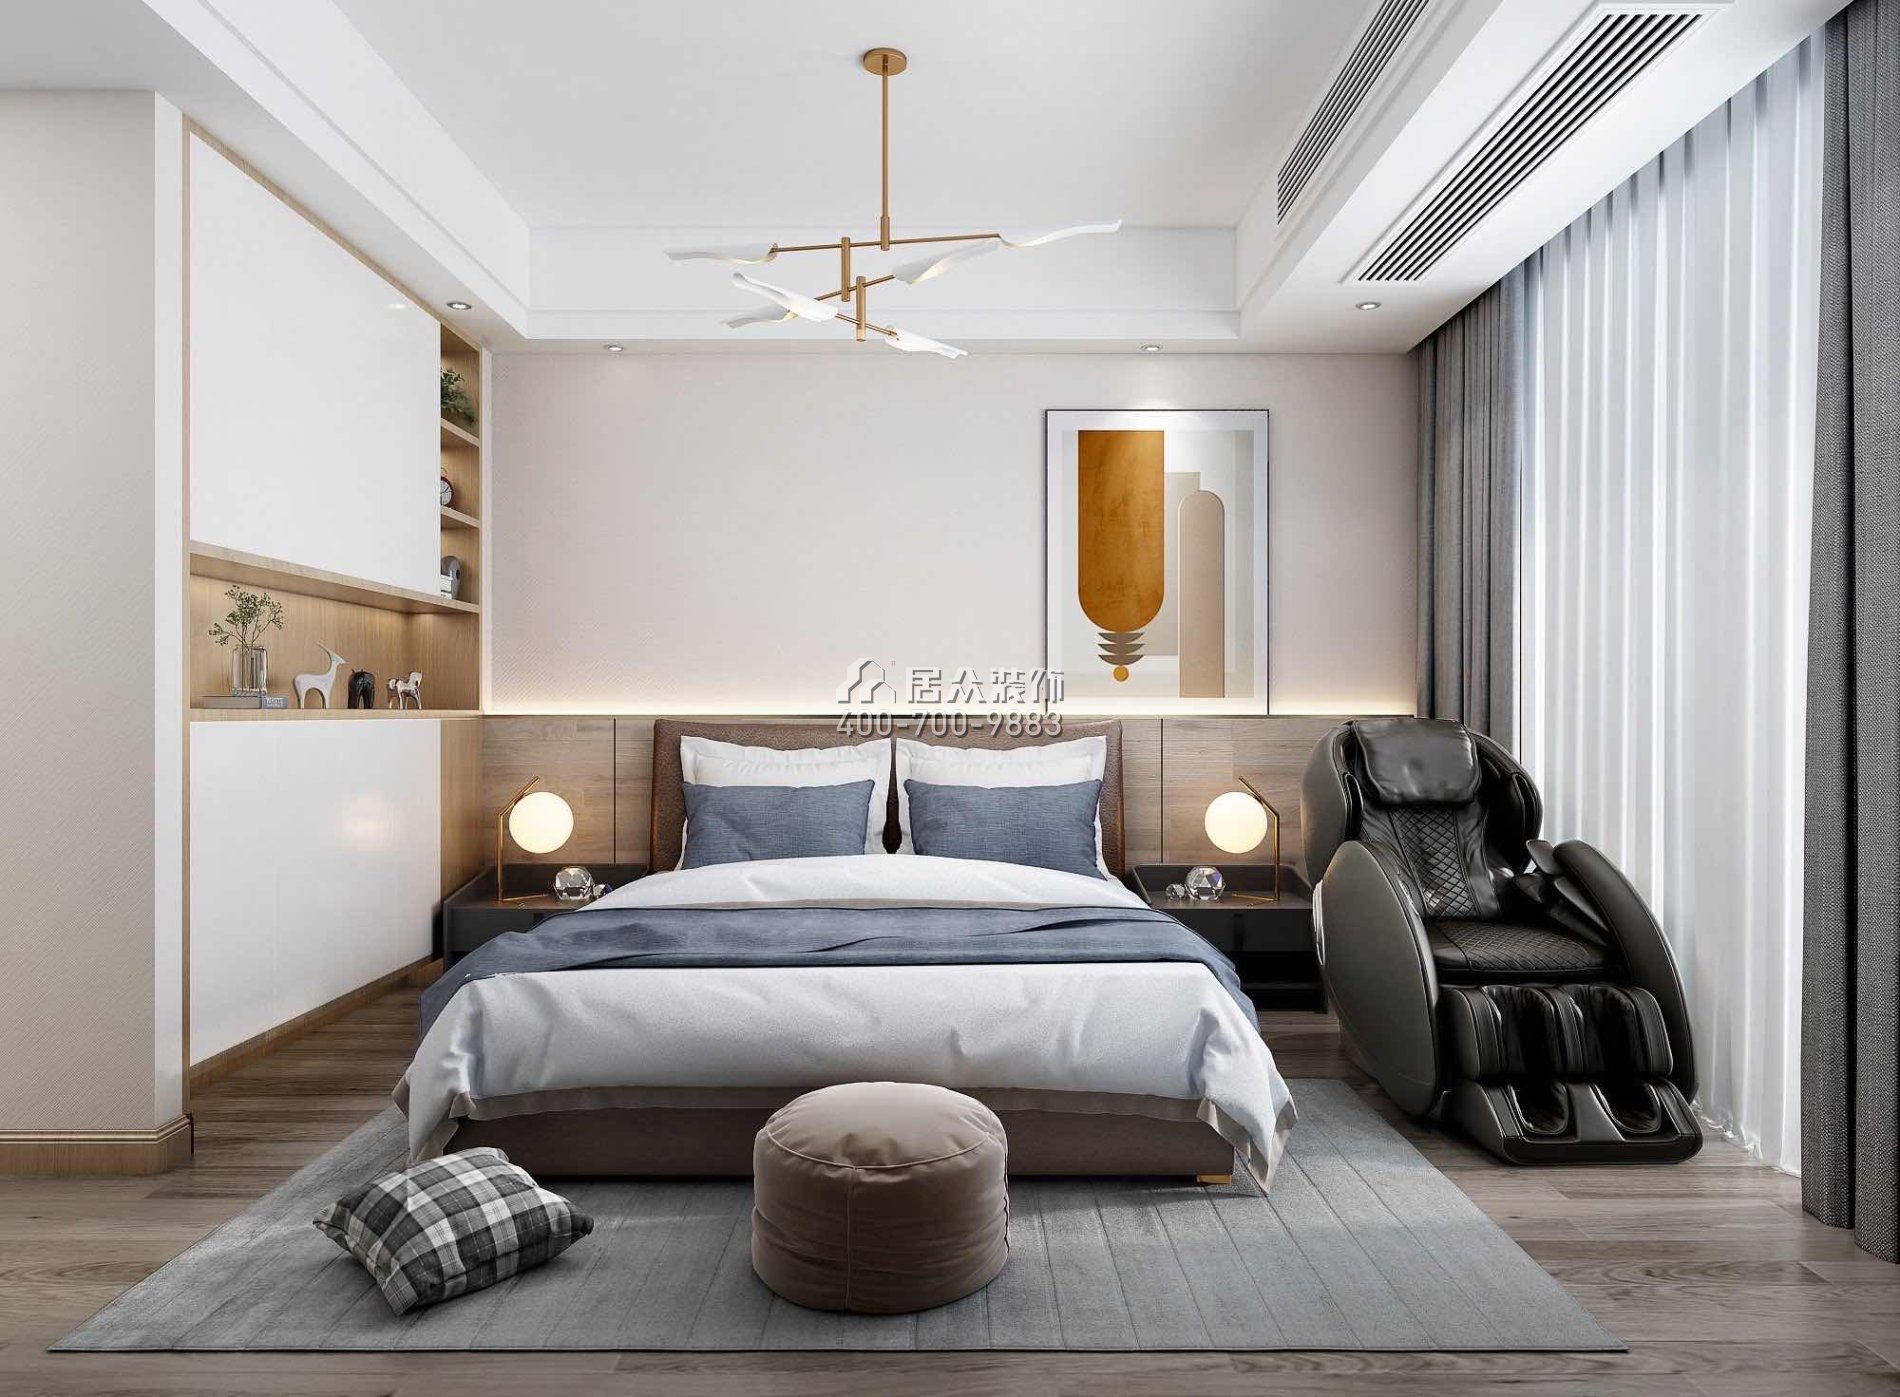 中泰上境280平方米现代简约风格别墅户型卧室装修效果图